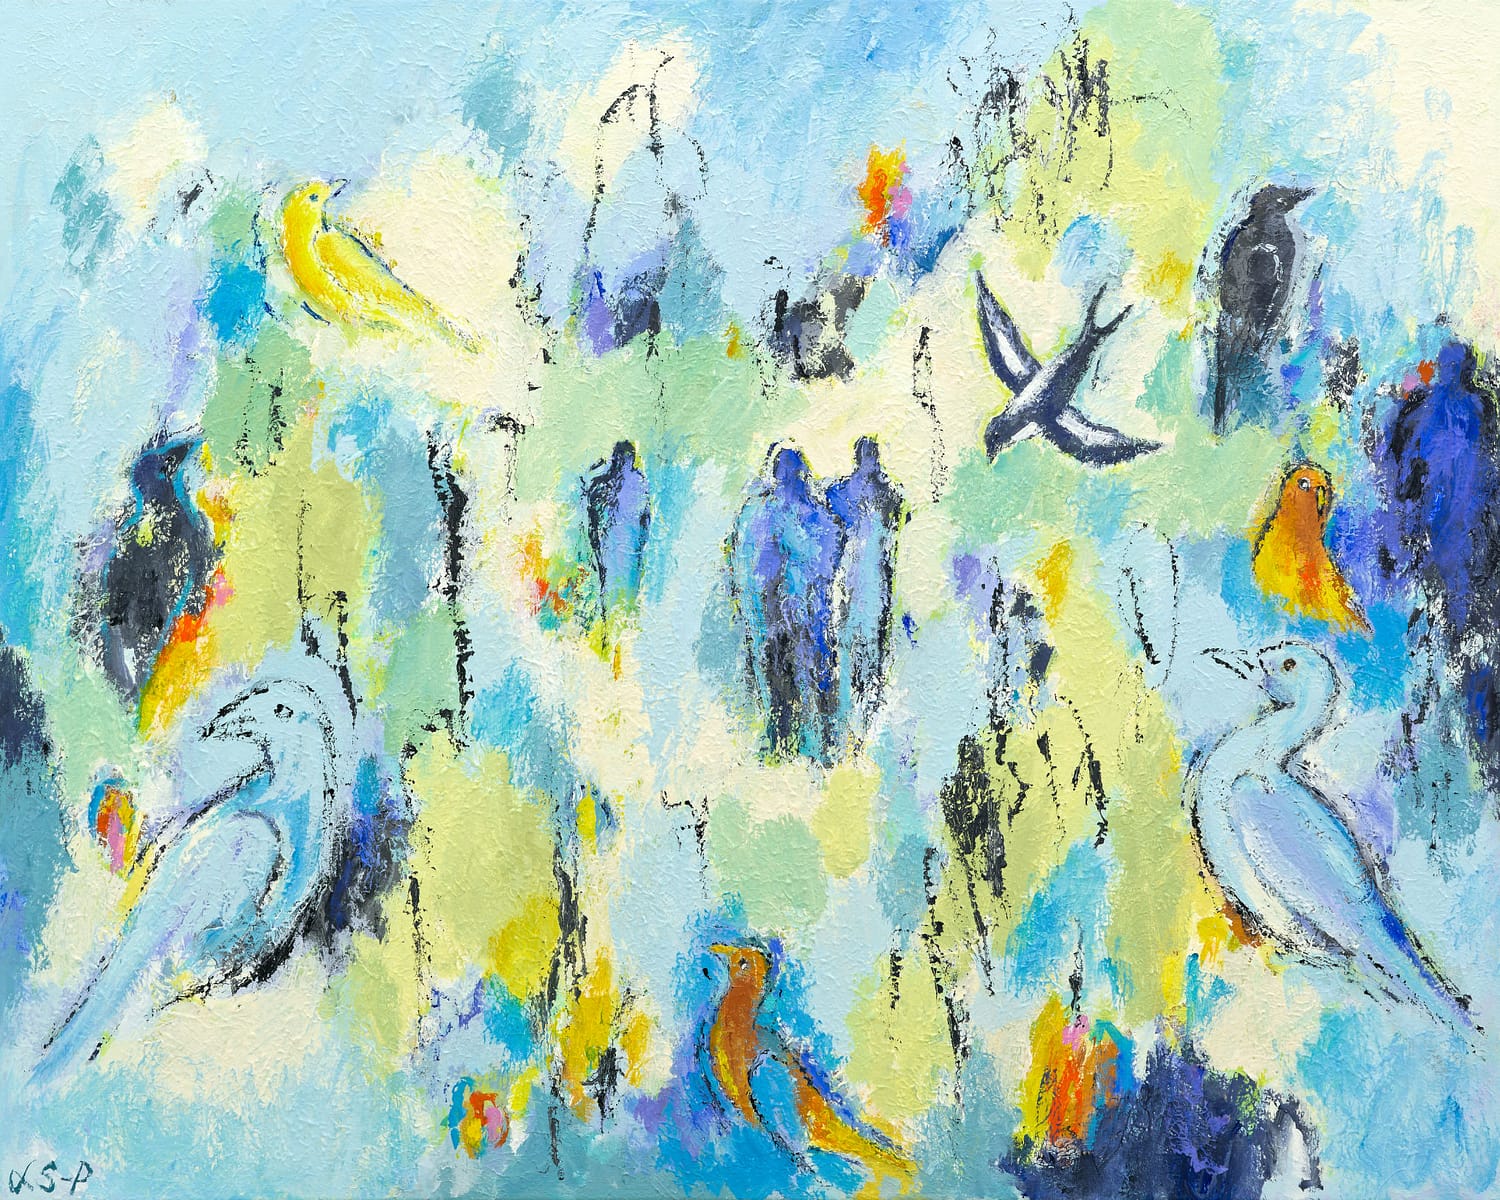 Lene Schmidt-Petersen: "Fugle i det blå univers" (100 x 80 cm)